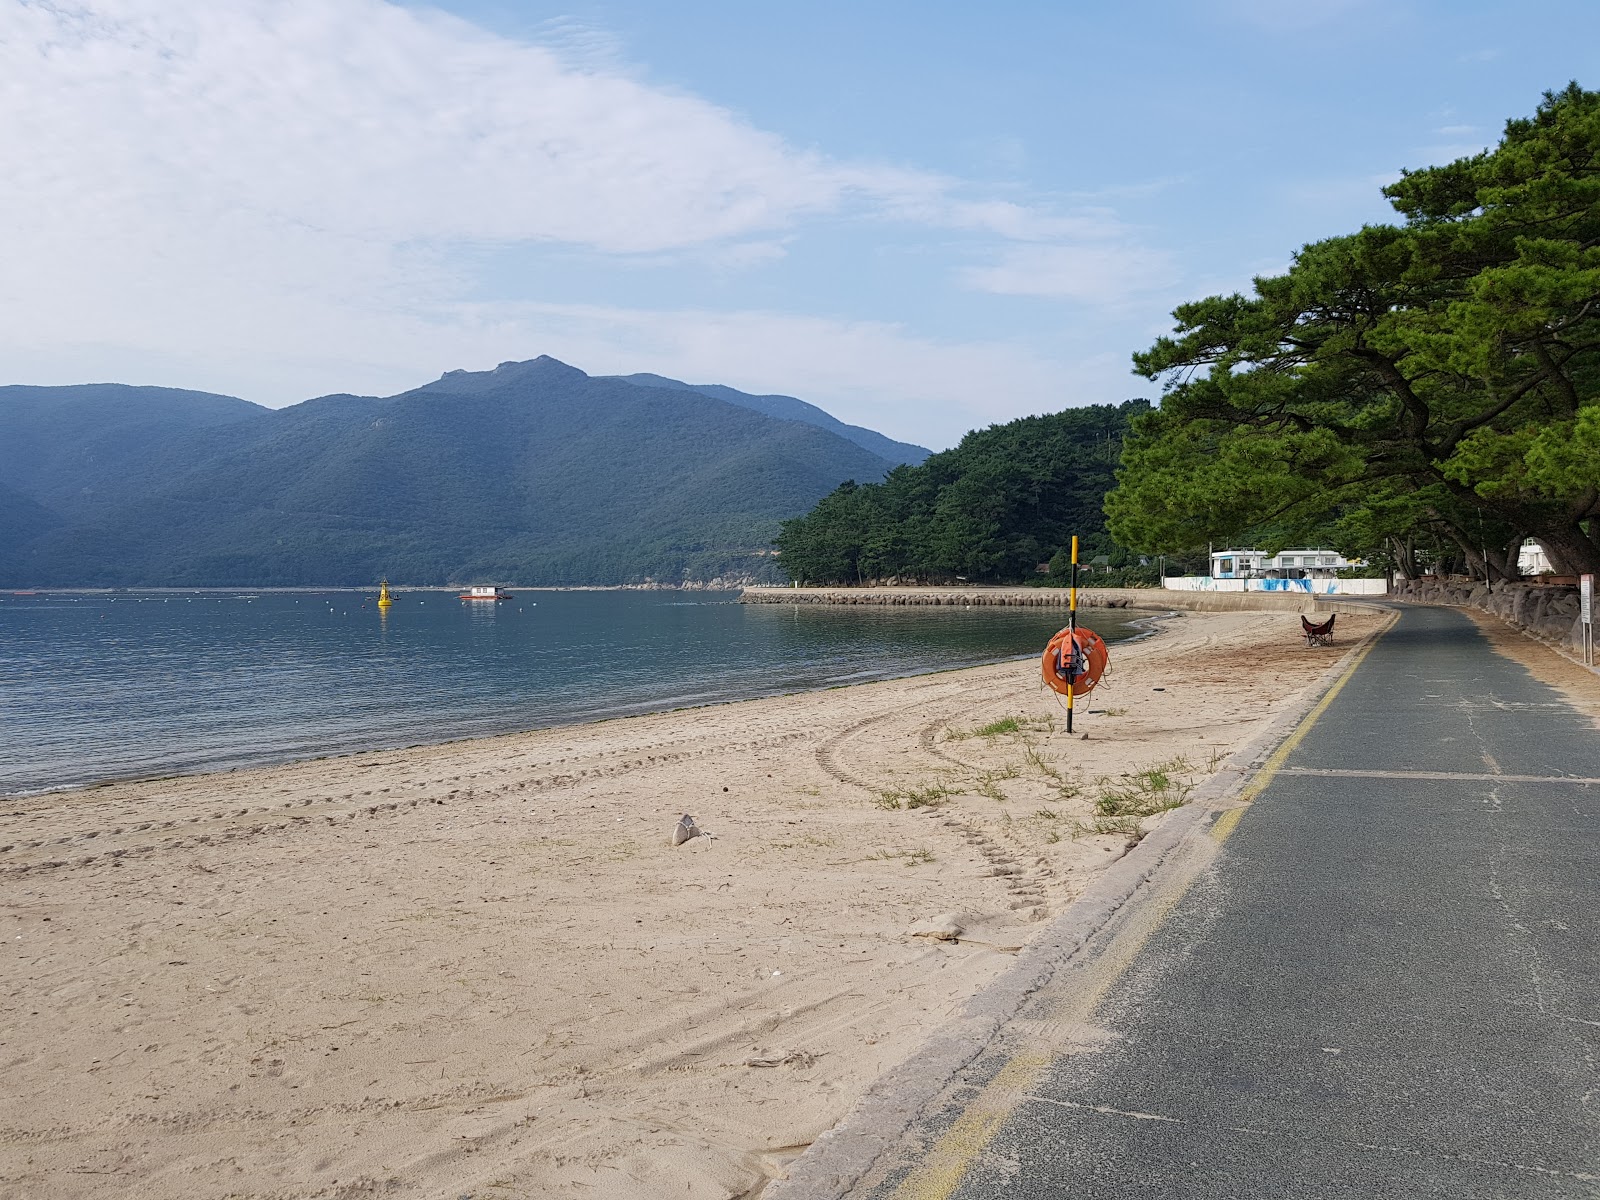 Myeongsa Beach'in fotoğrafı geniş ile birlikte